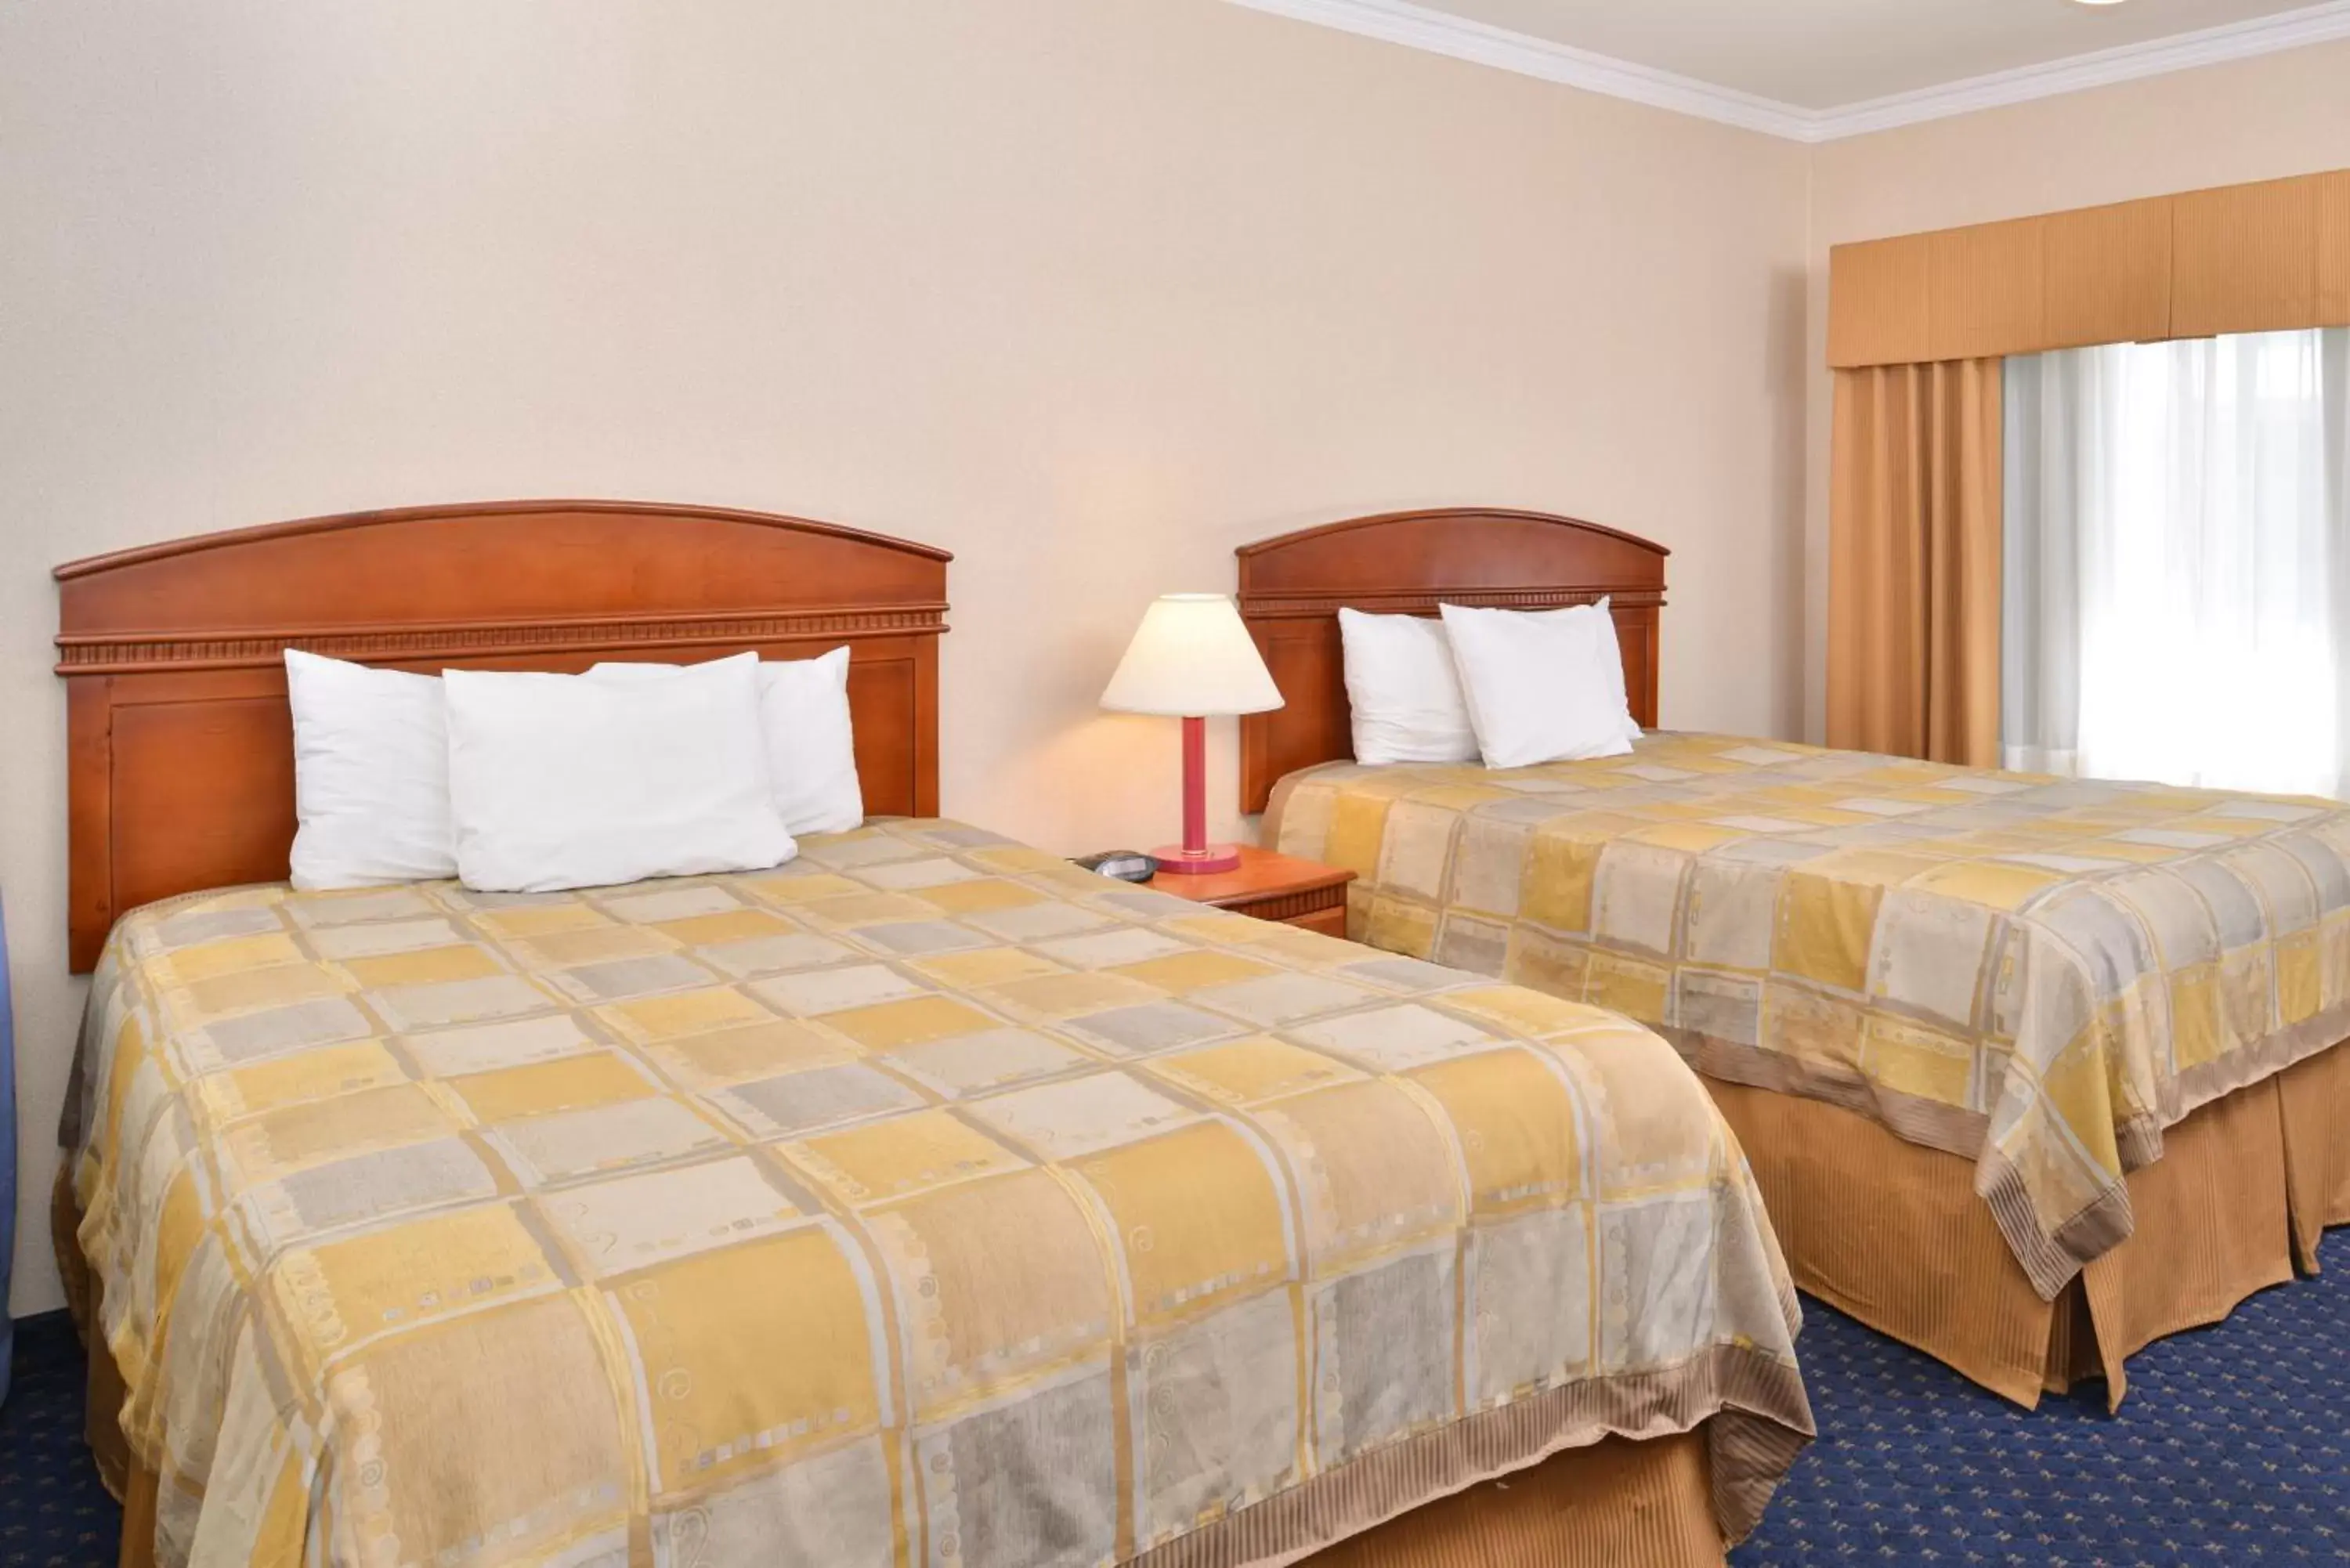 Bedroom, Bed in Americas Best Value Inn - Joshua Tree/Twentynine Palms